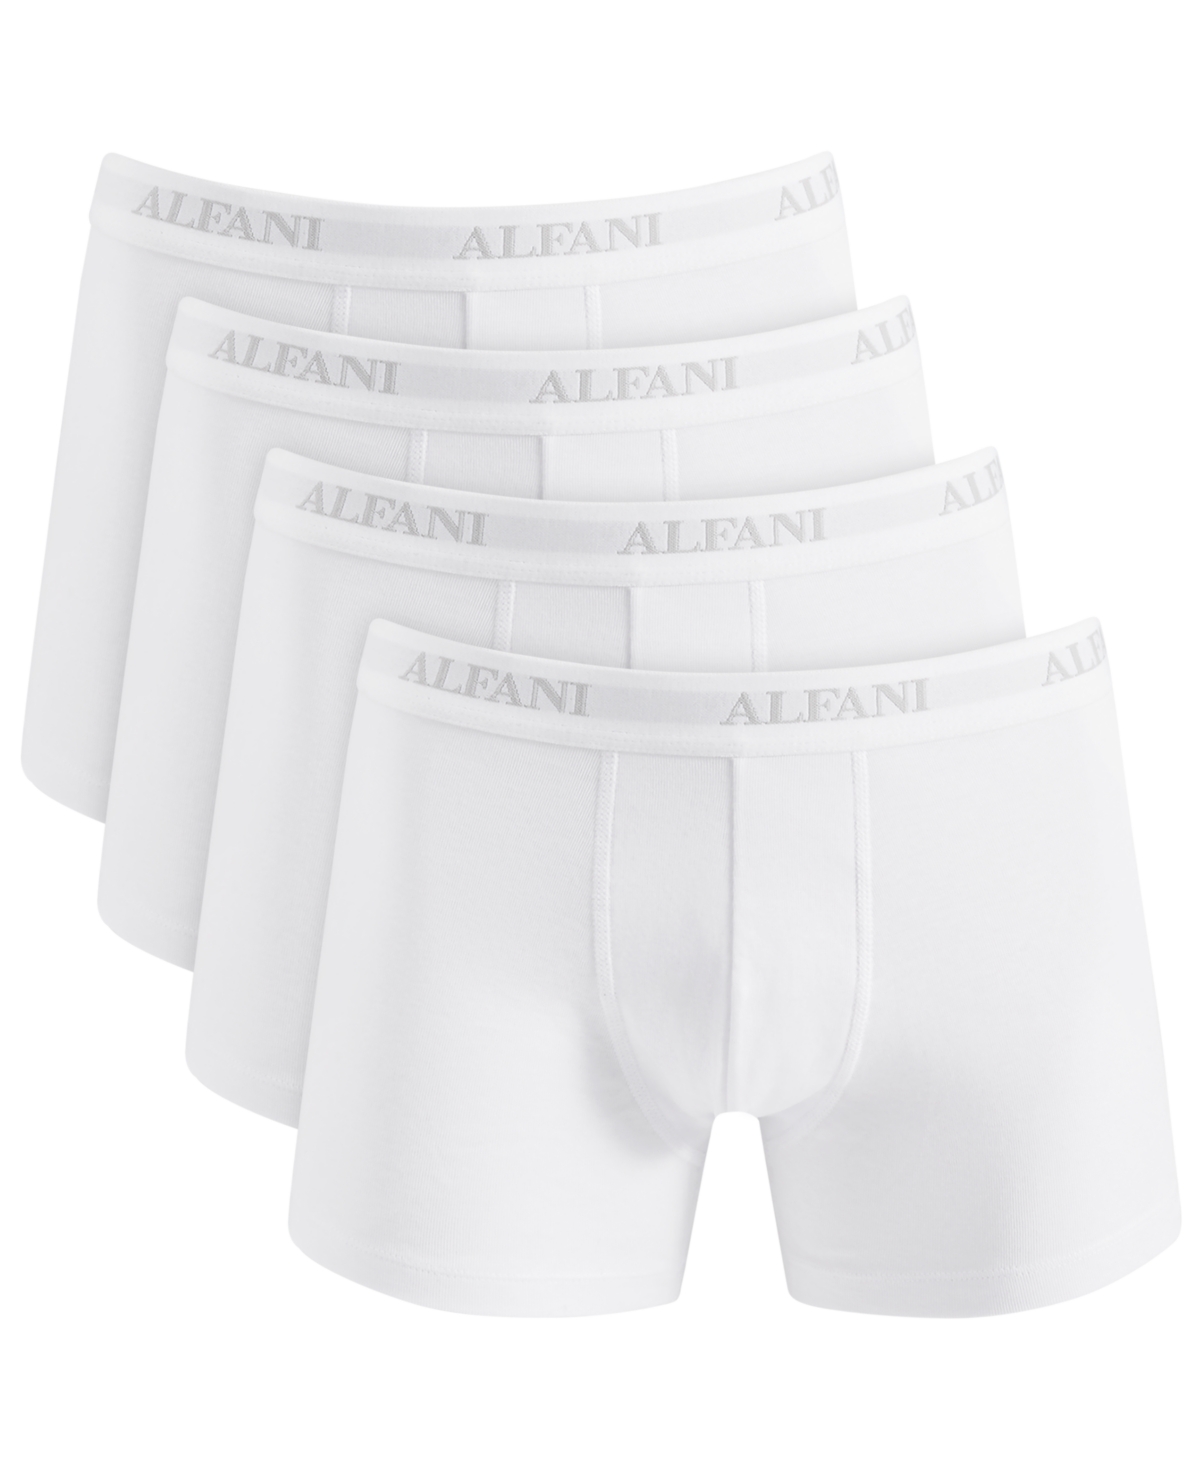 Alfani Men's 4-Pk. Moisture-Wicking Cotton Trunks, Created for Macy's